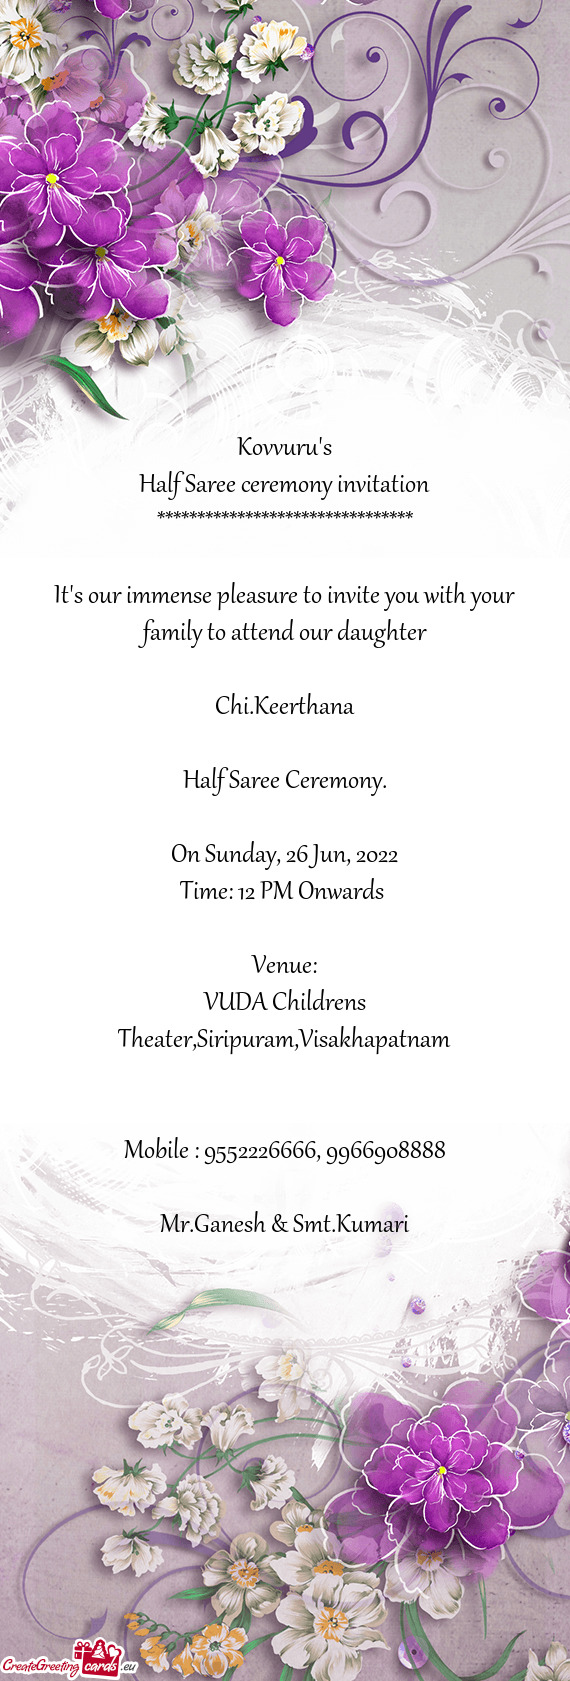 VUDA Childrens Theater,Siripuram,Visakhapatnam